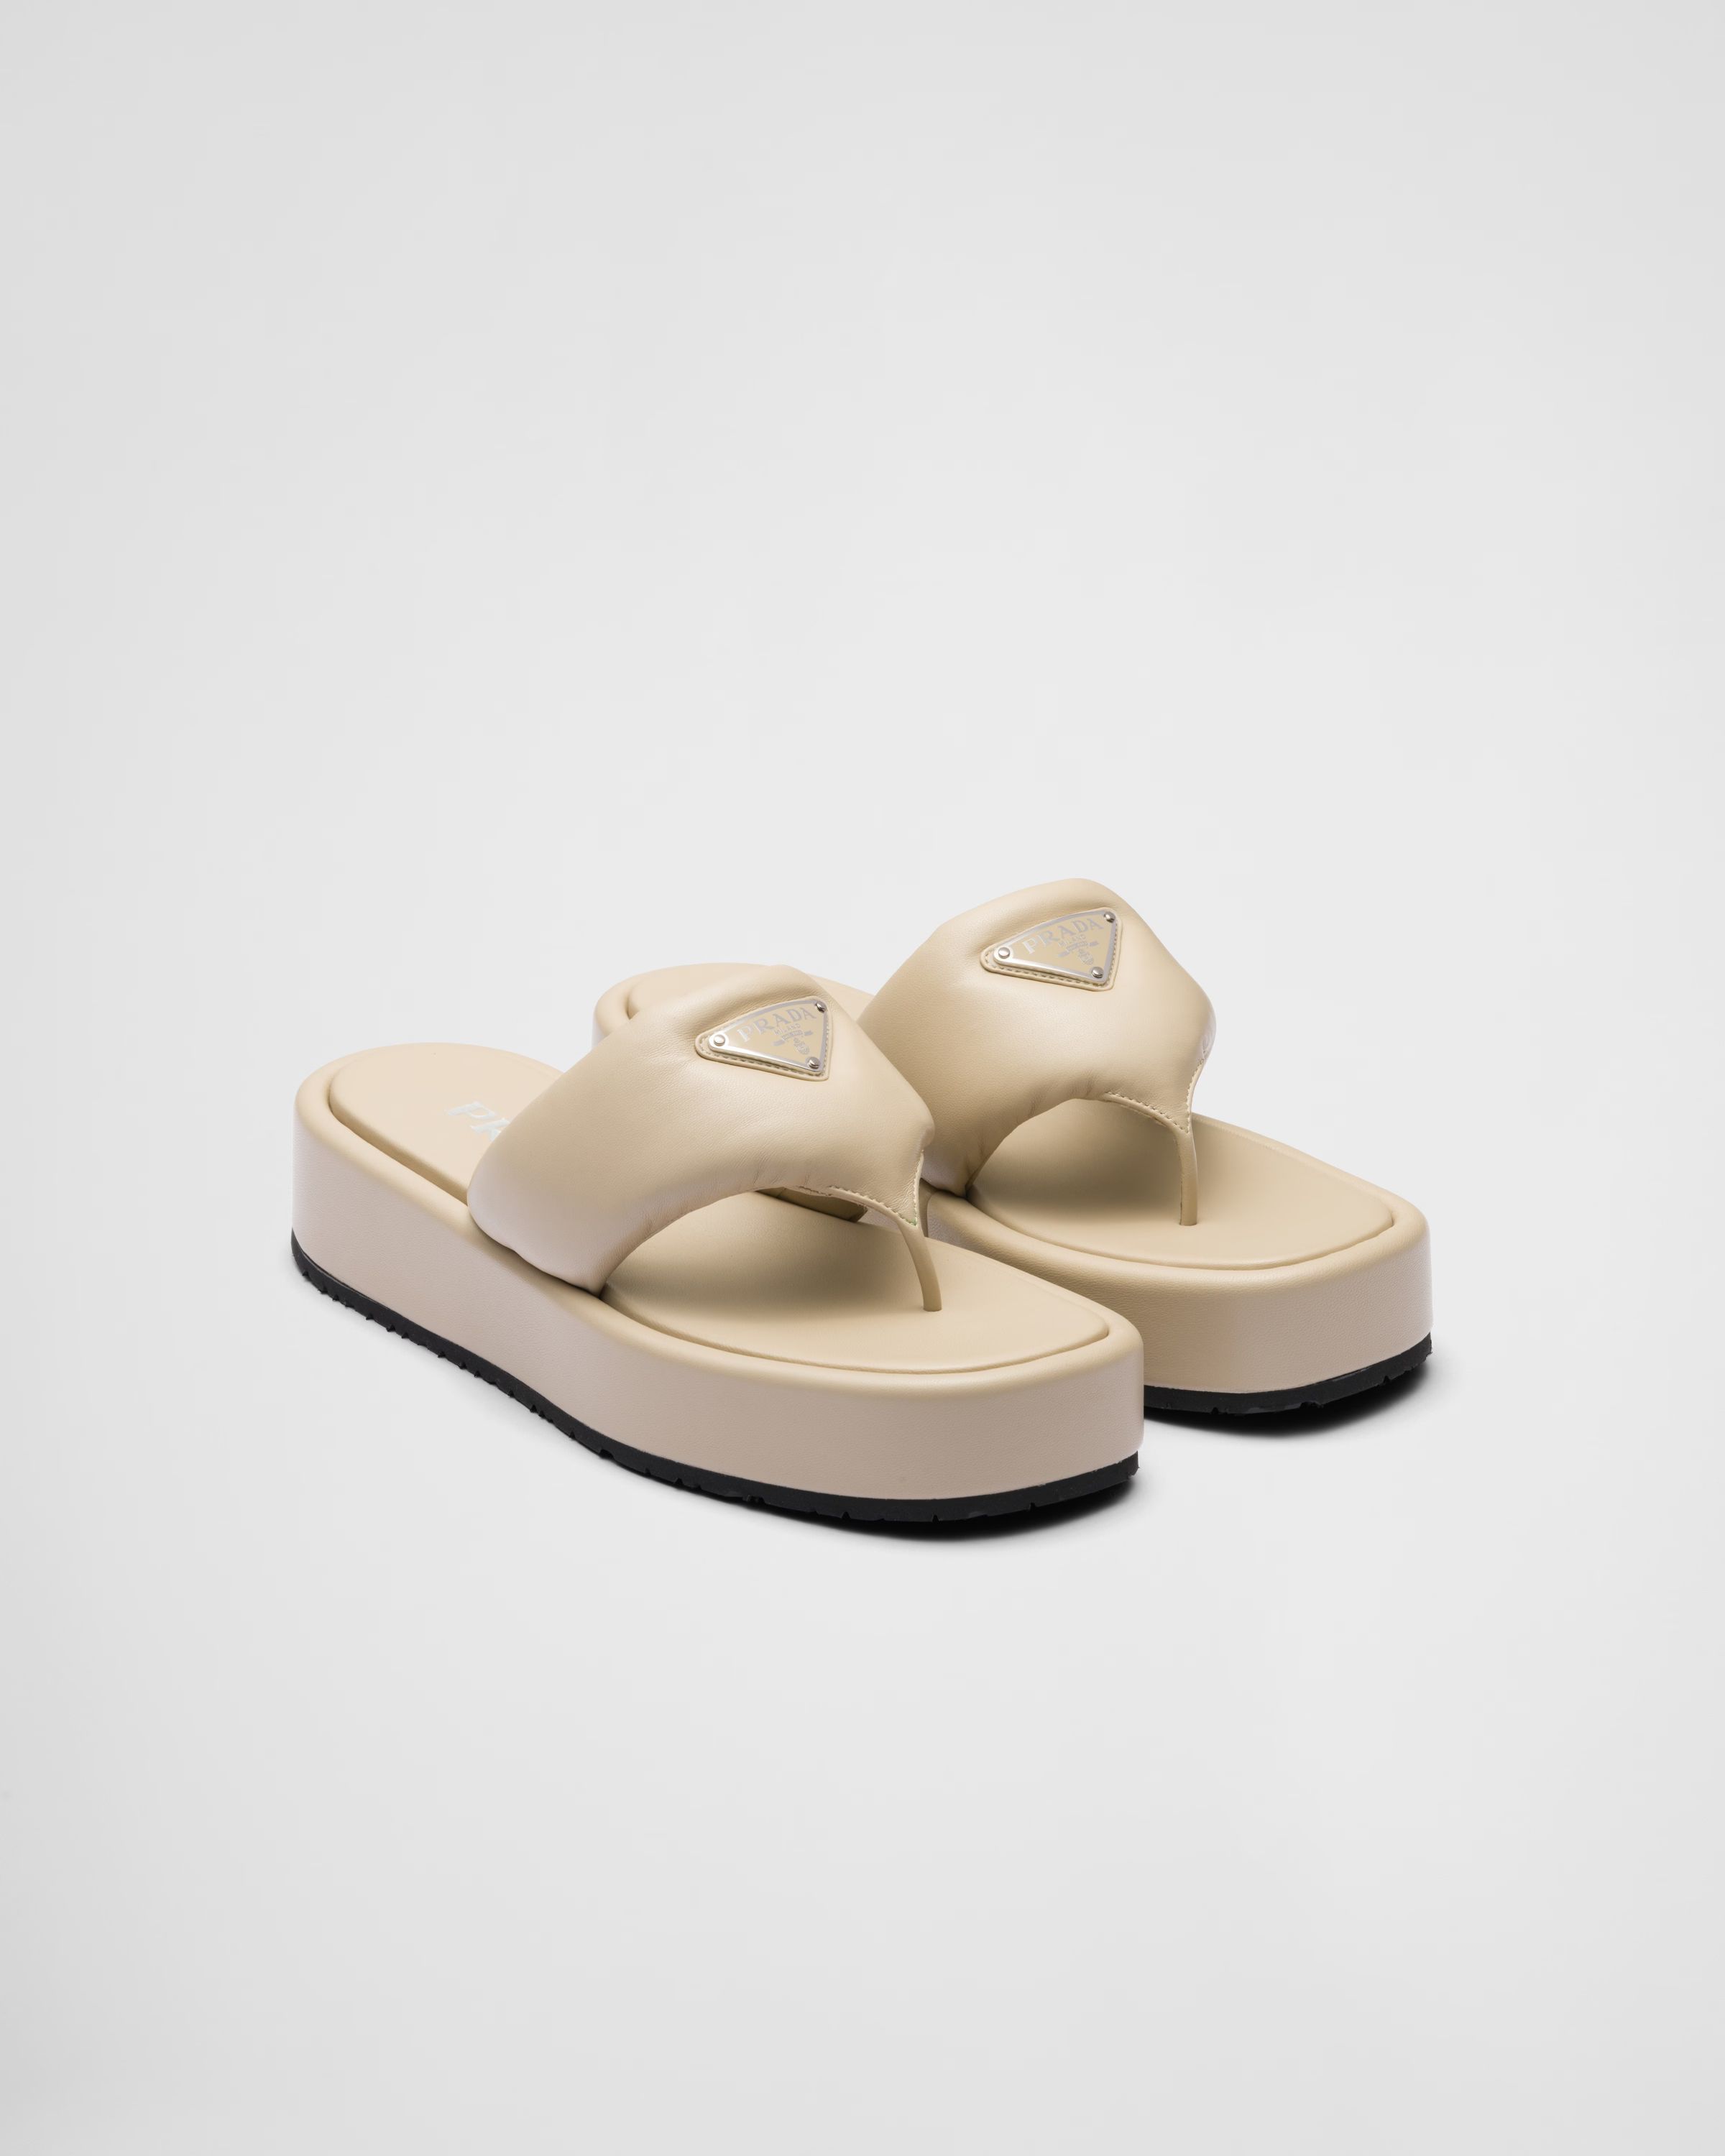 Desert Beige Prada Soft Padded Nappa Leather Thong Wedge Sandals | PRADA | Prada Spa US